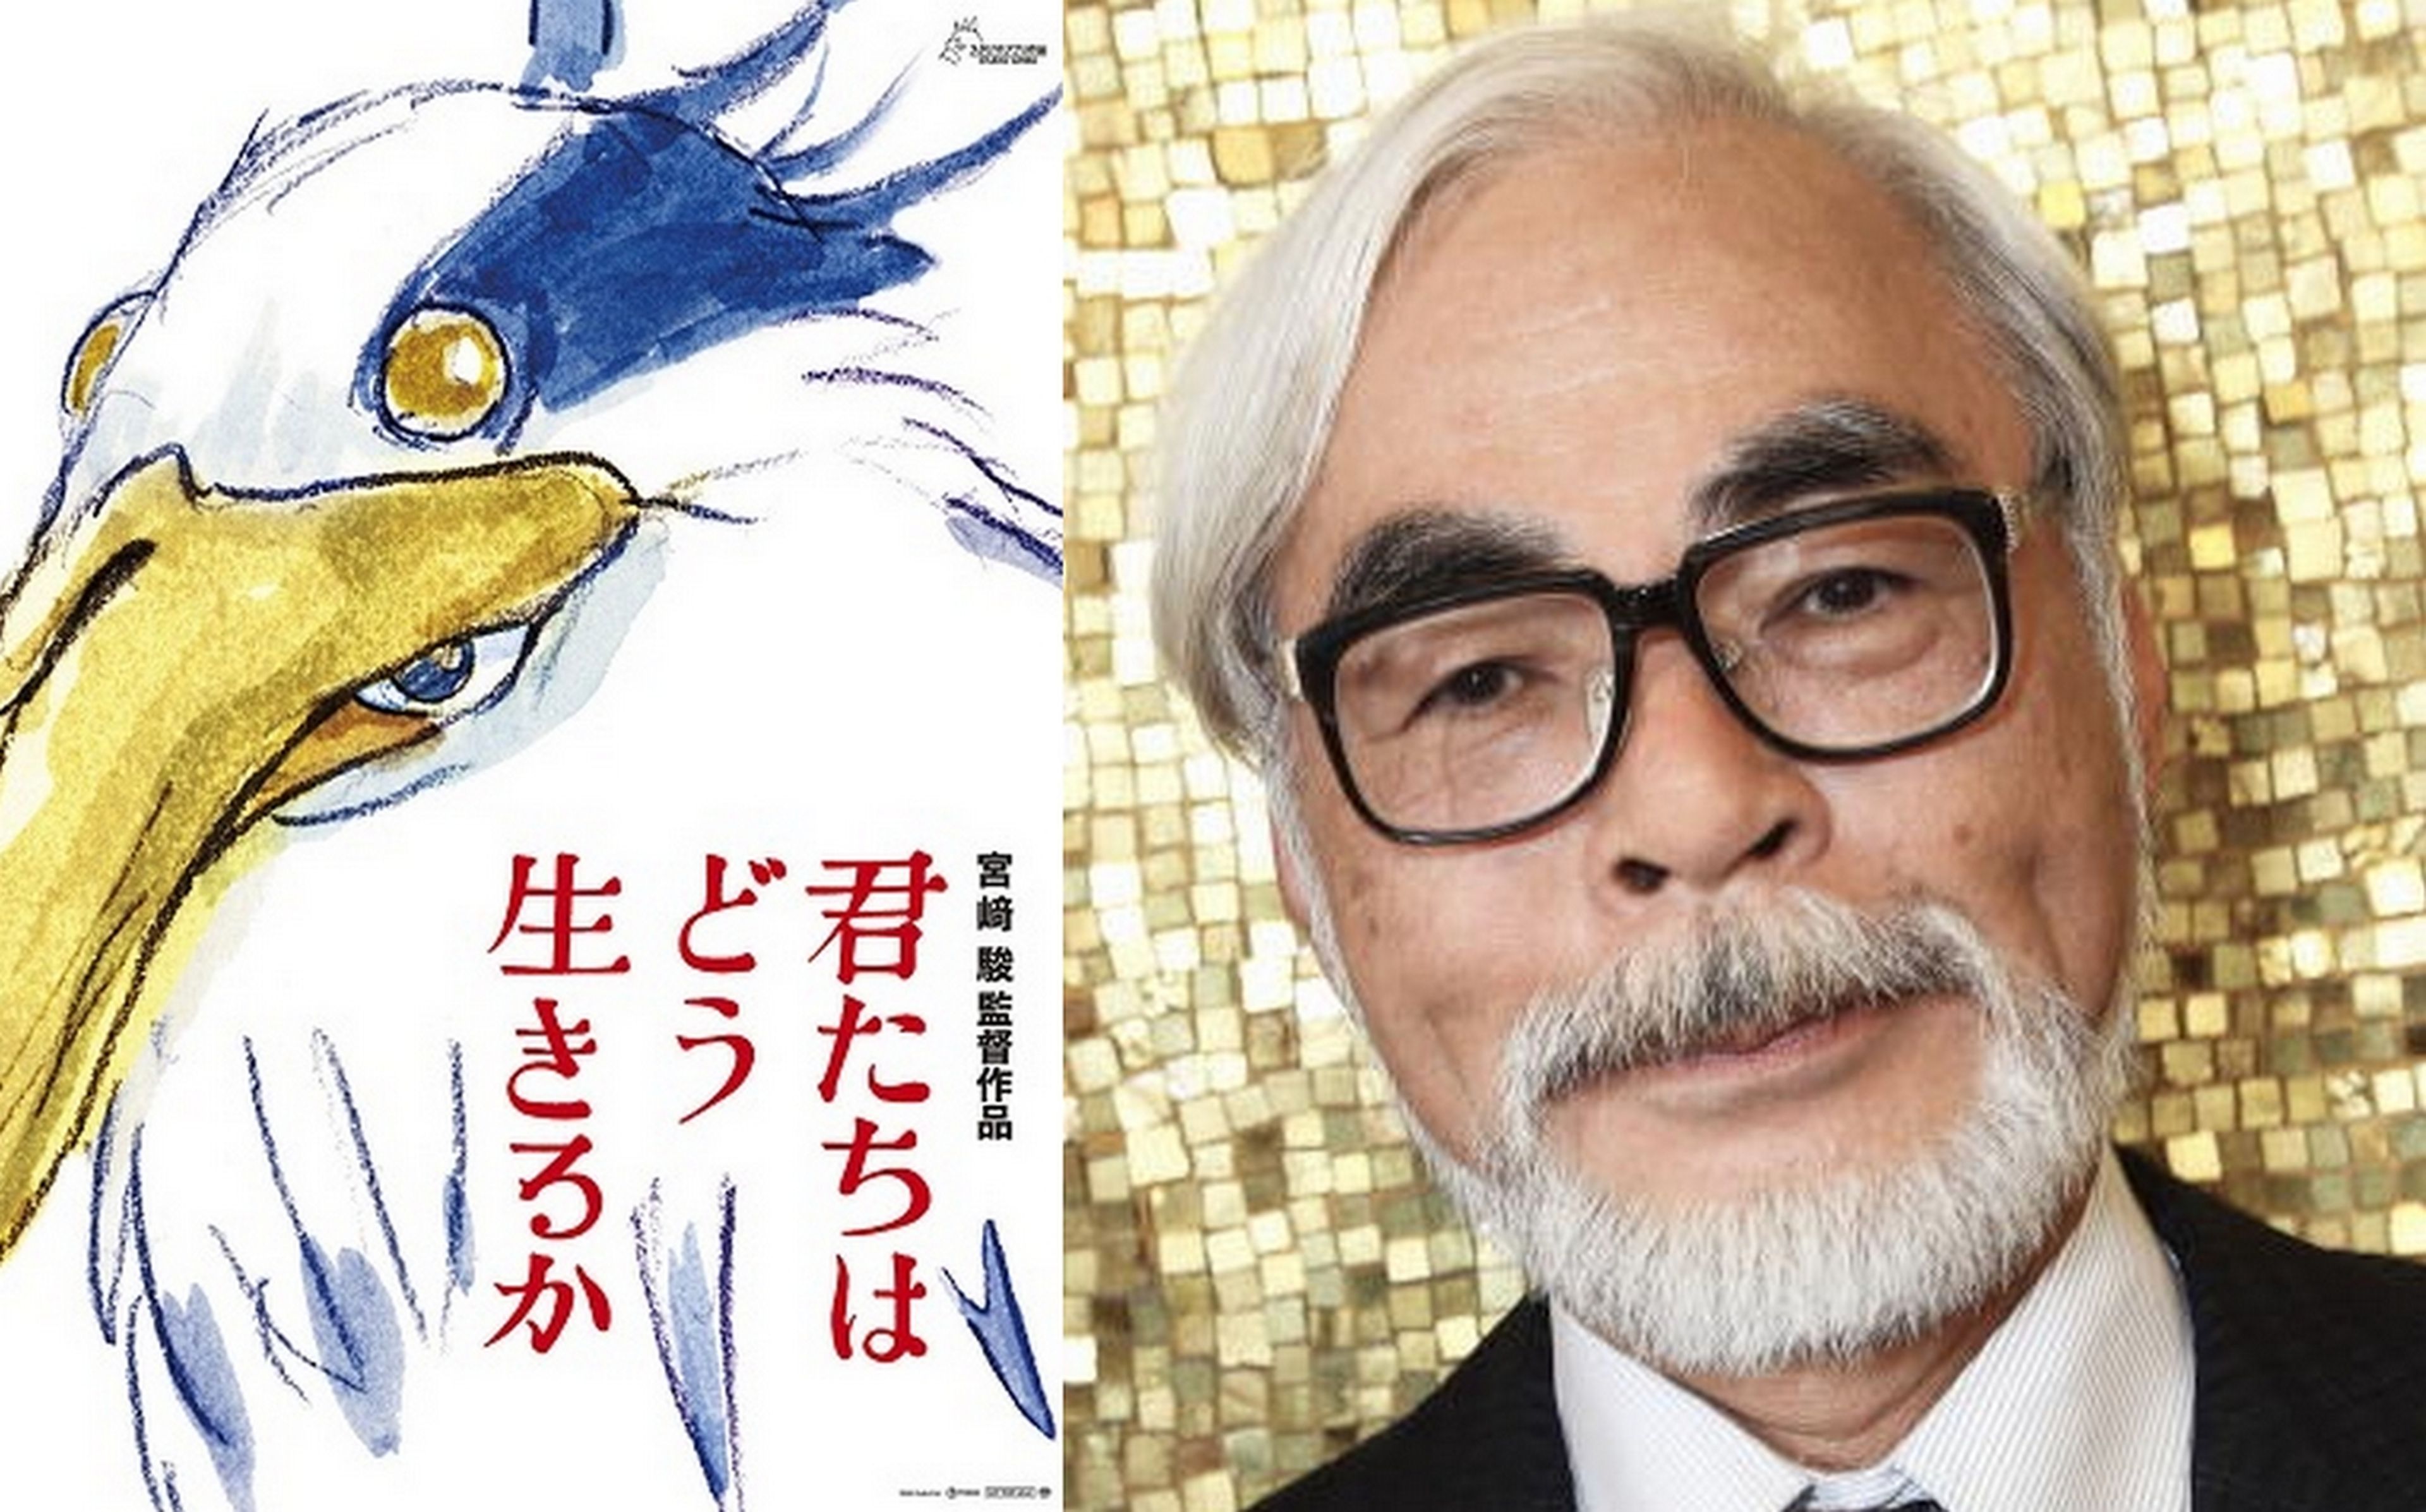 El mítico Hayao Miyazaki del Studio Ghibli estrena película sin tráileres ni imágenes, y la explicación tiene mucho sentido